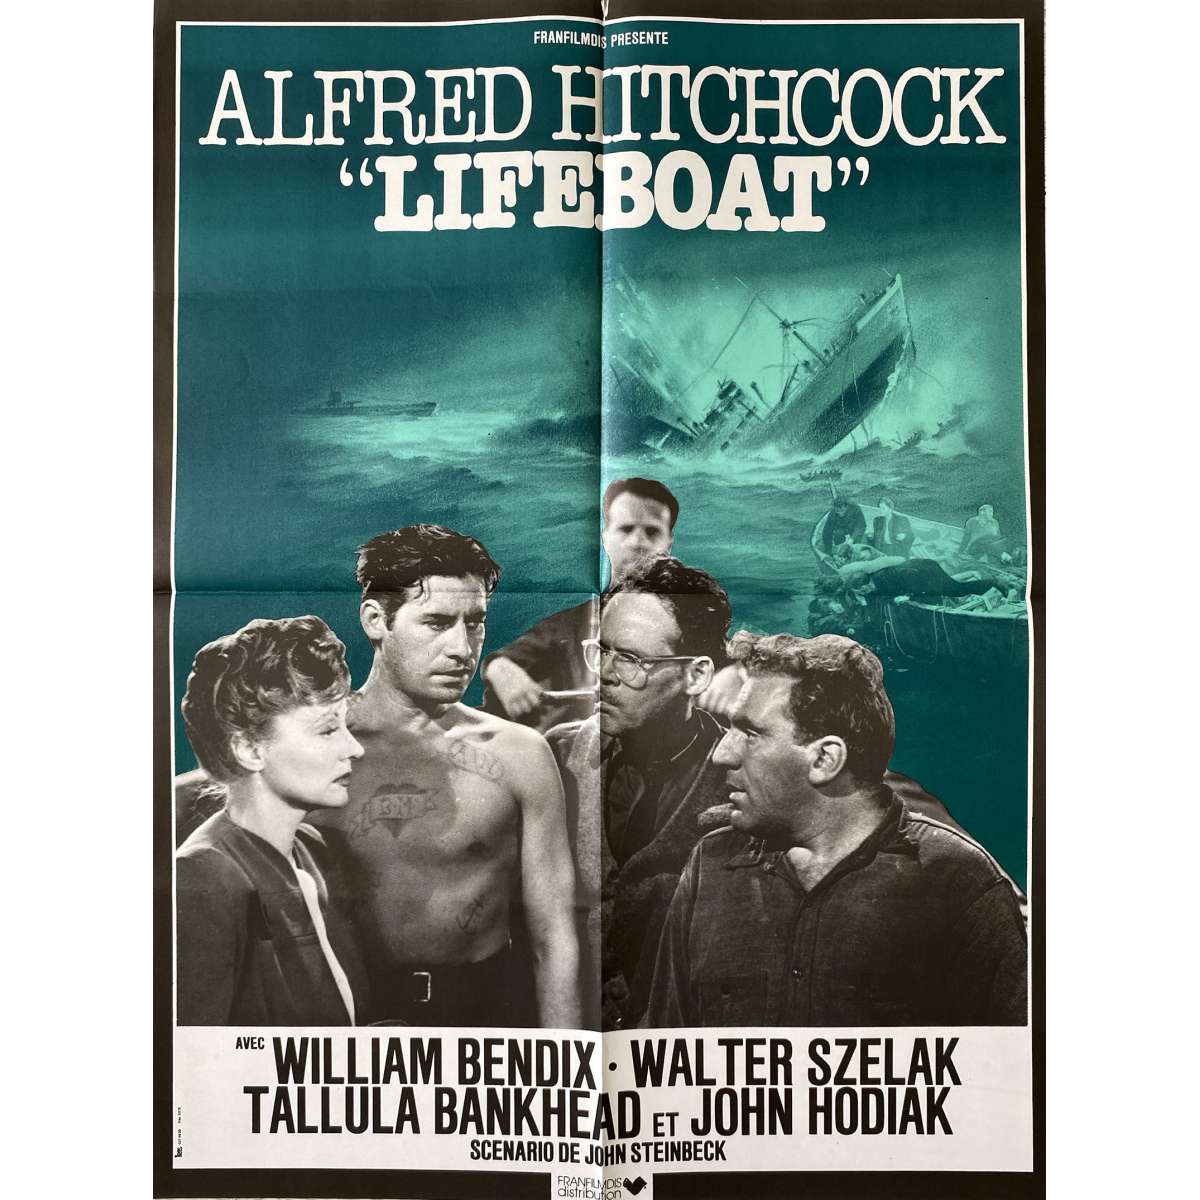 lifeboat documentary short